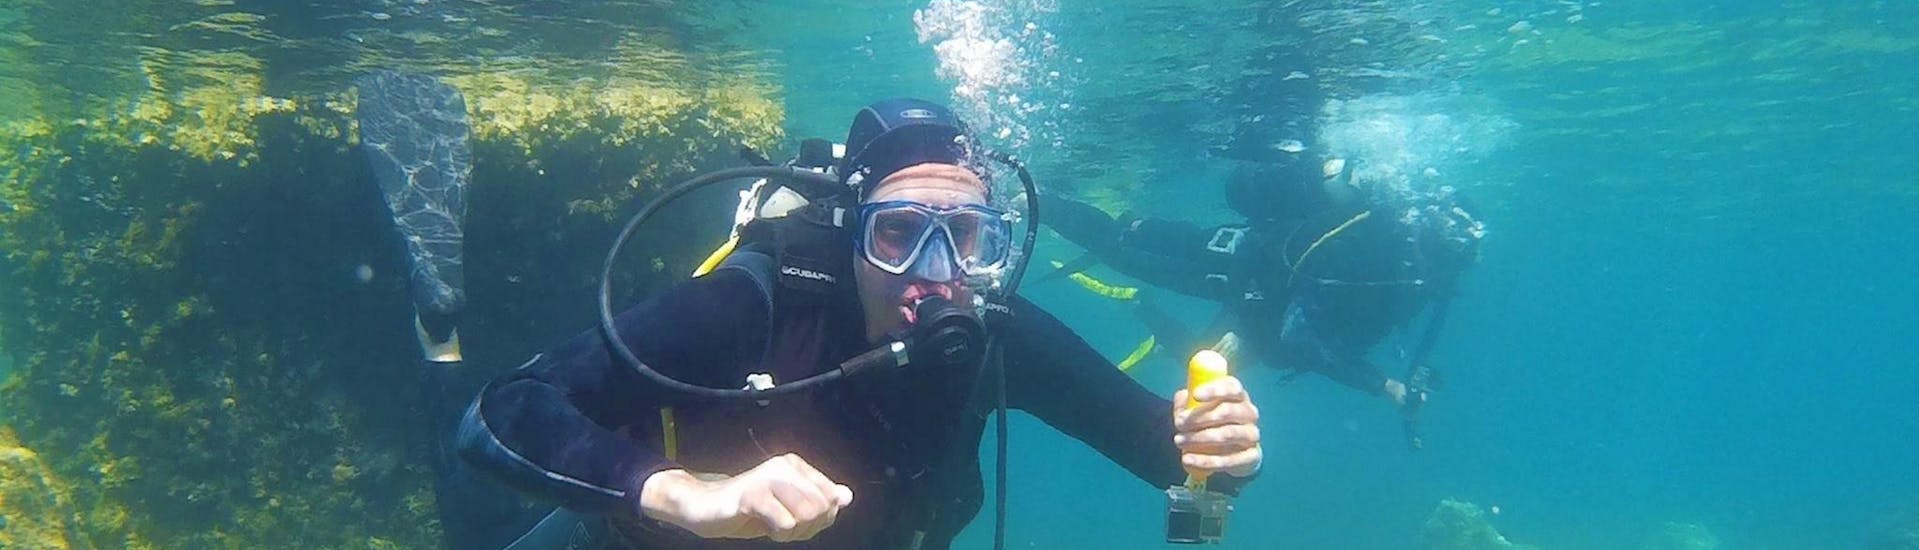 Un hombre va a descubrir el buceo en la bahía de Kontokali, con Scubanauts Corfu Diving Center.